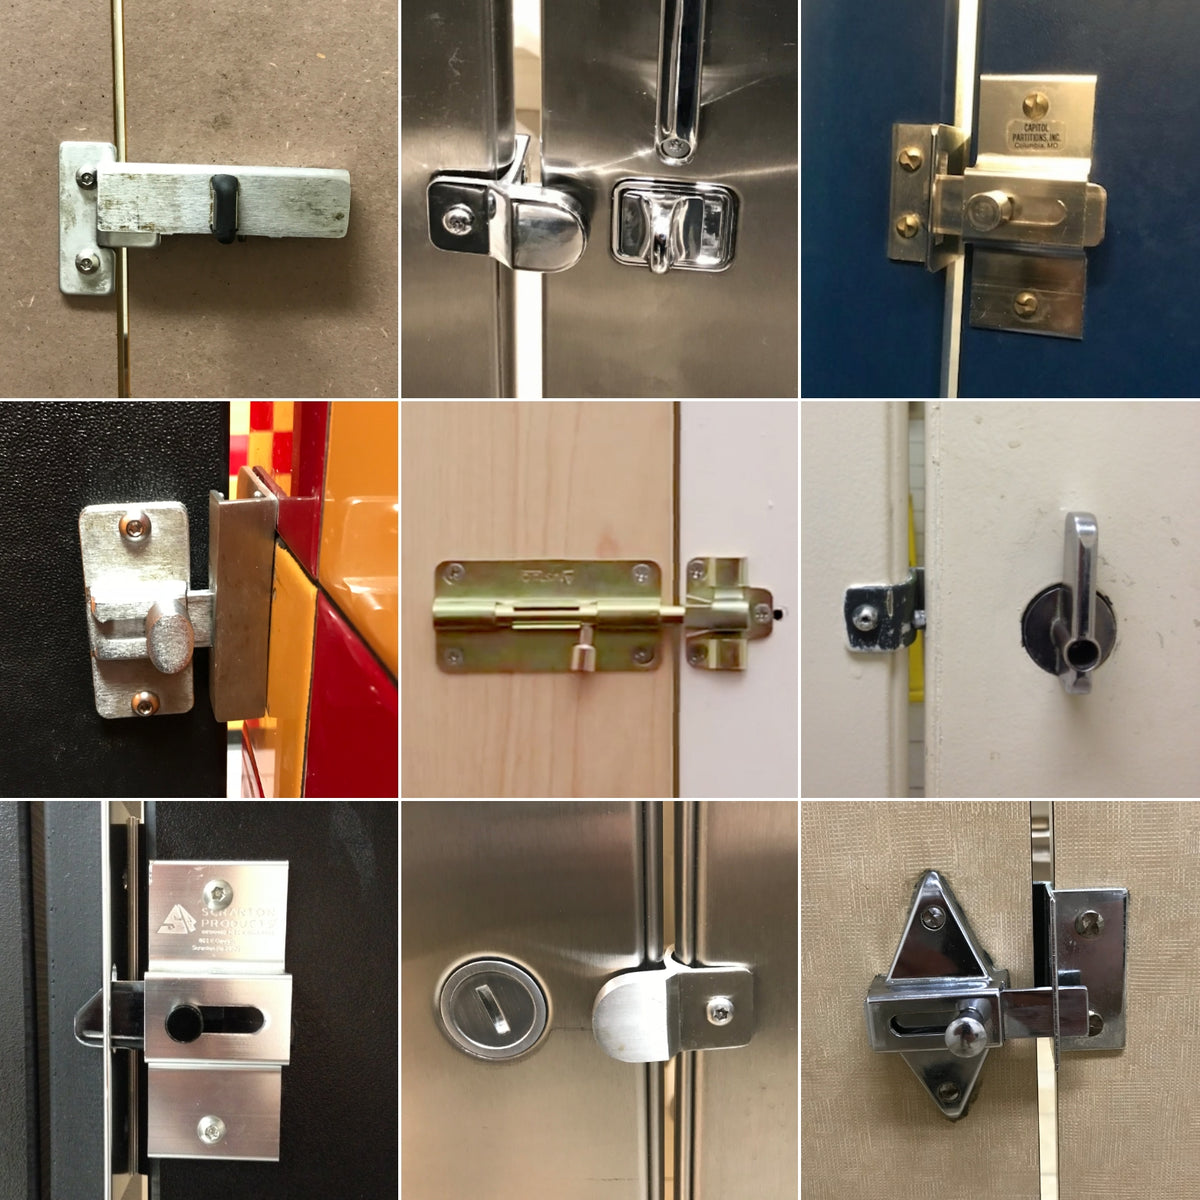 Restroom Stall Locks